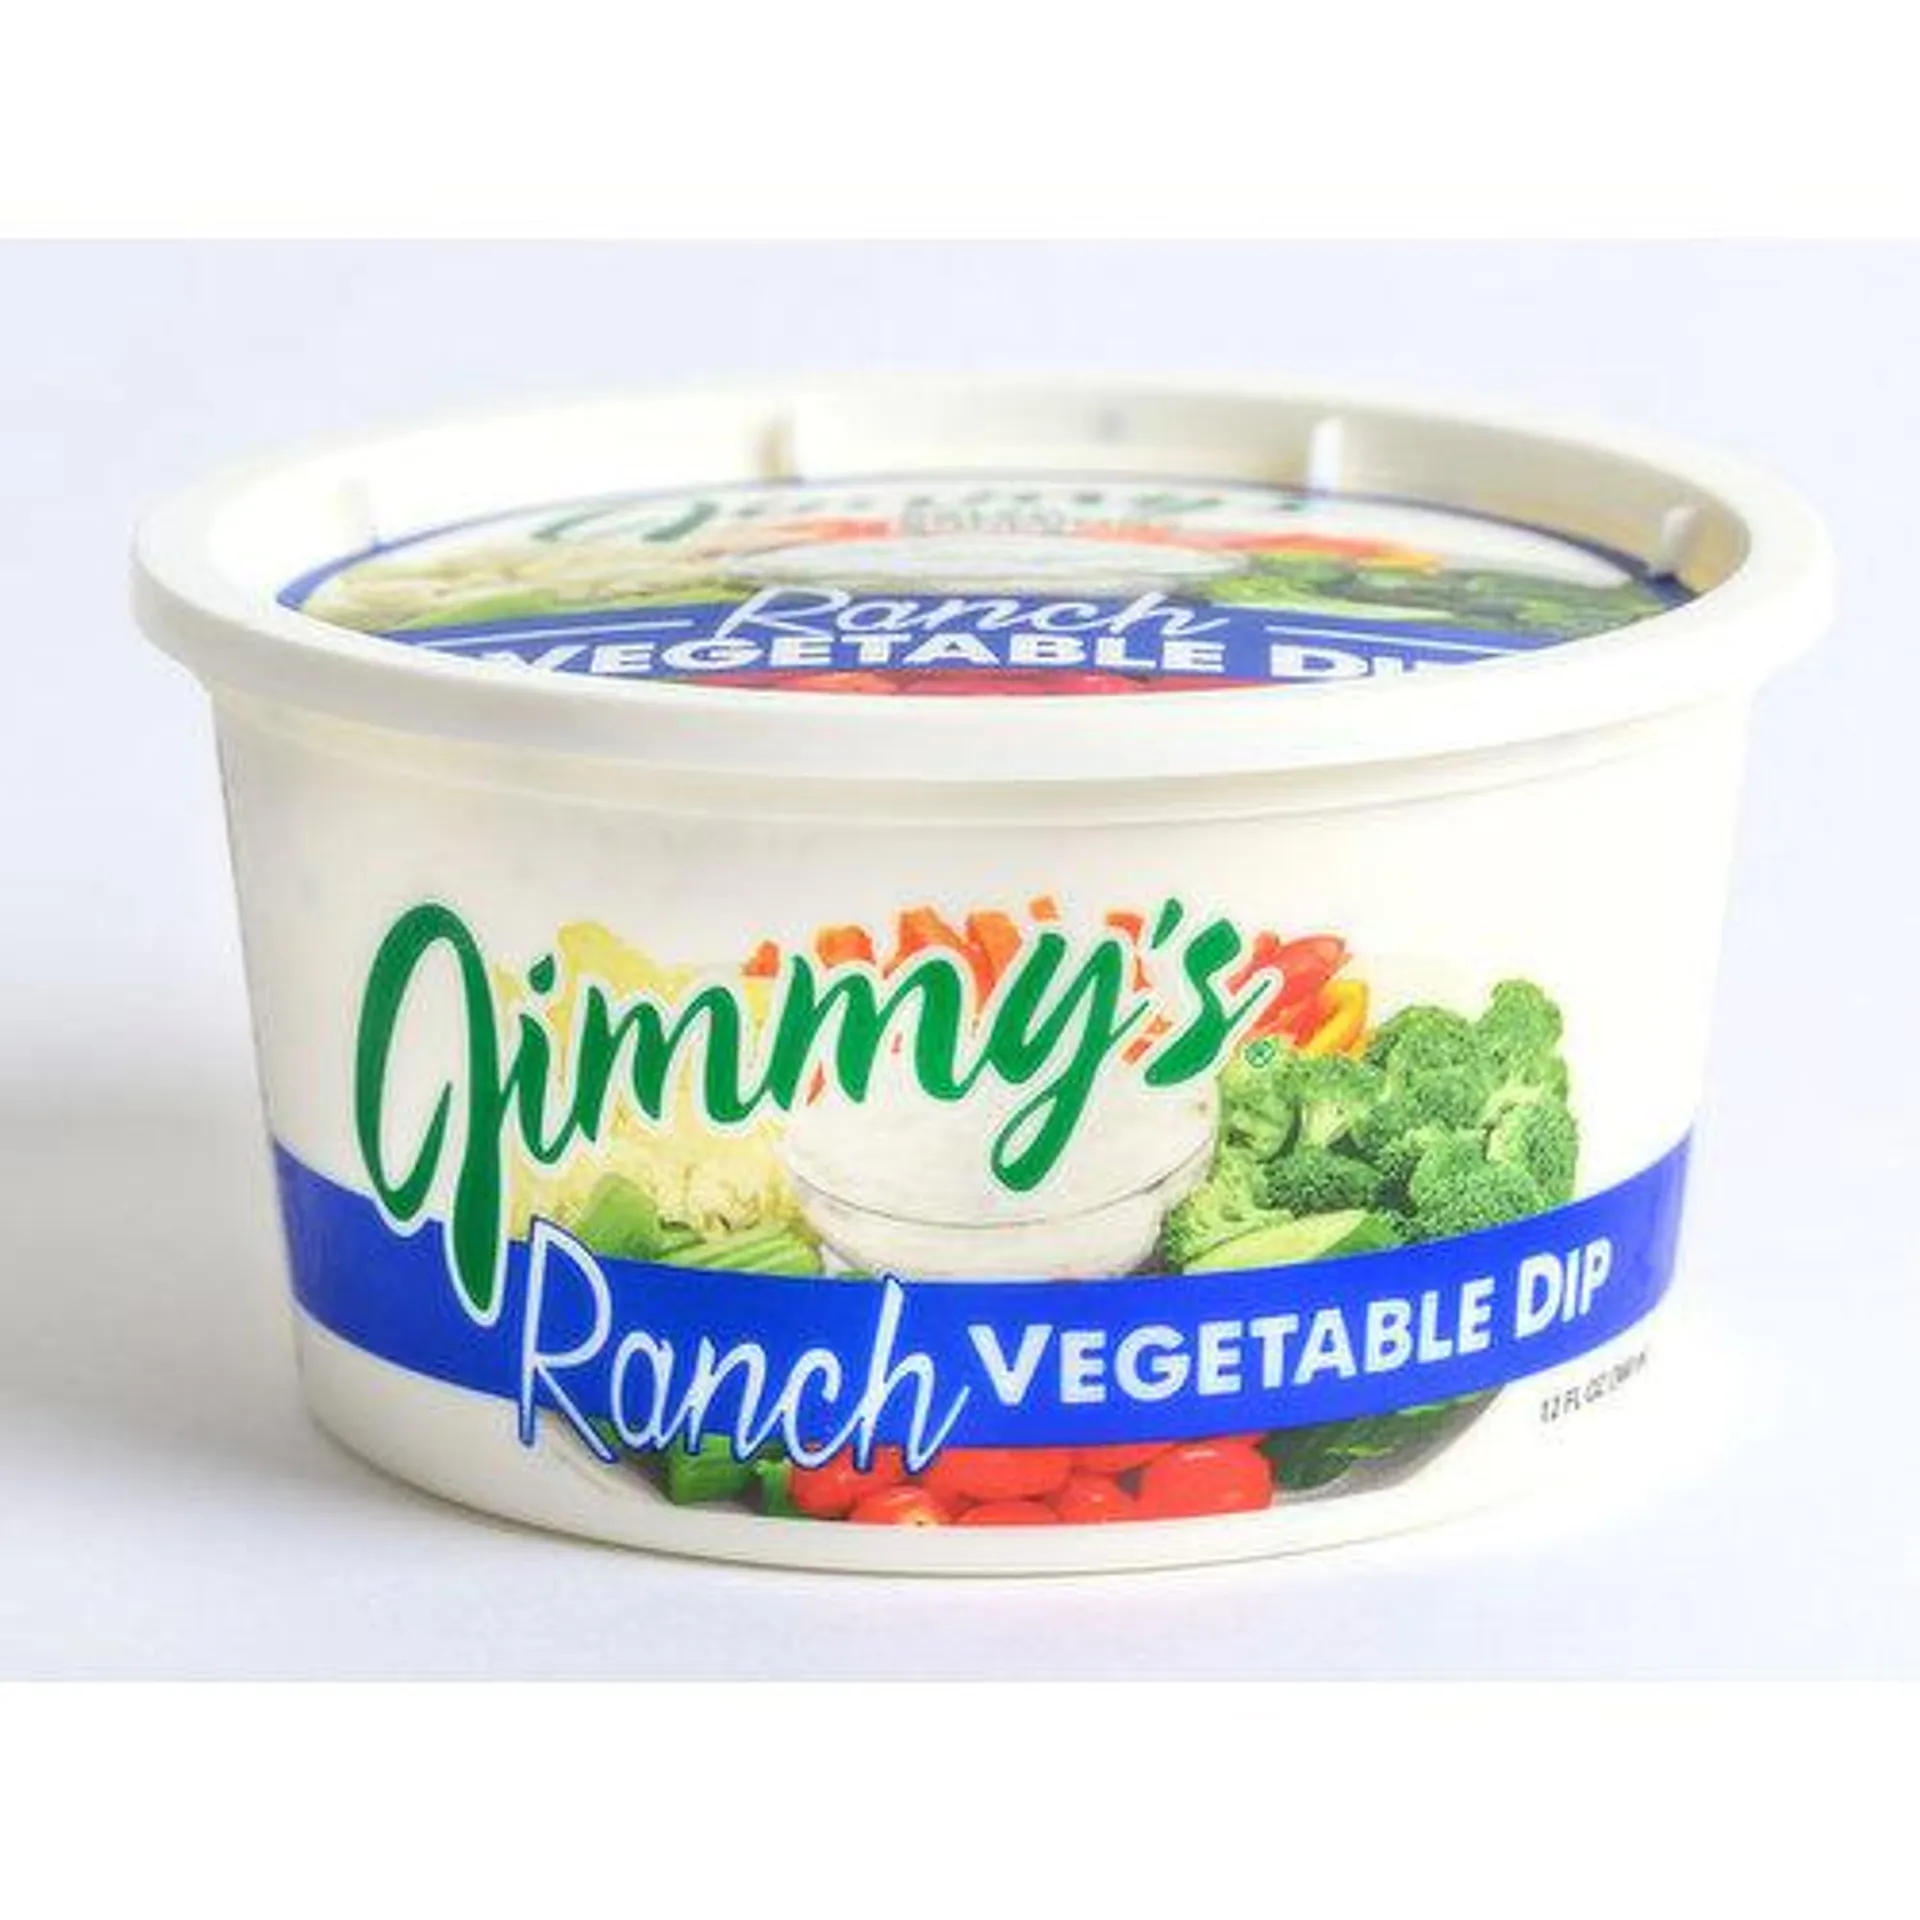 Jimmy's Ranch Vegetable Dip, 12 Fluid ounce